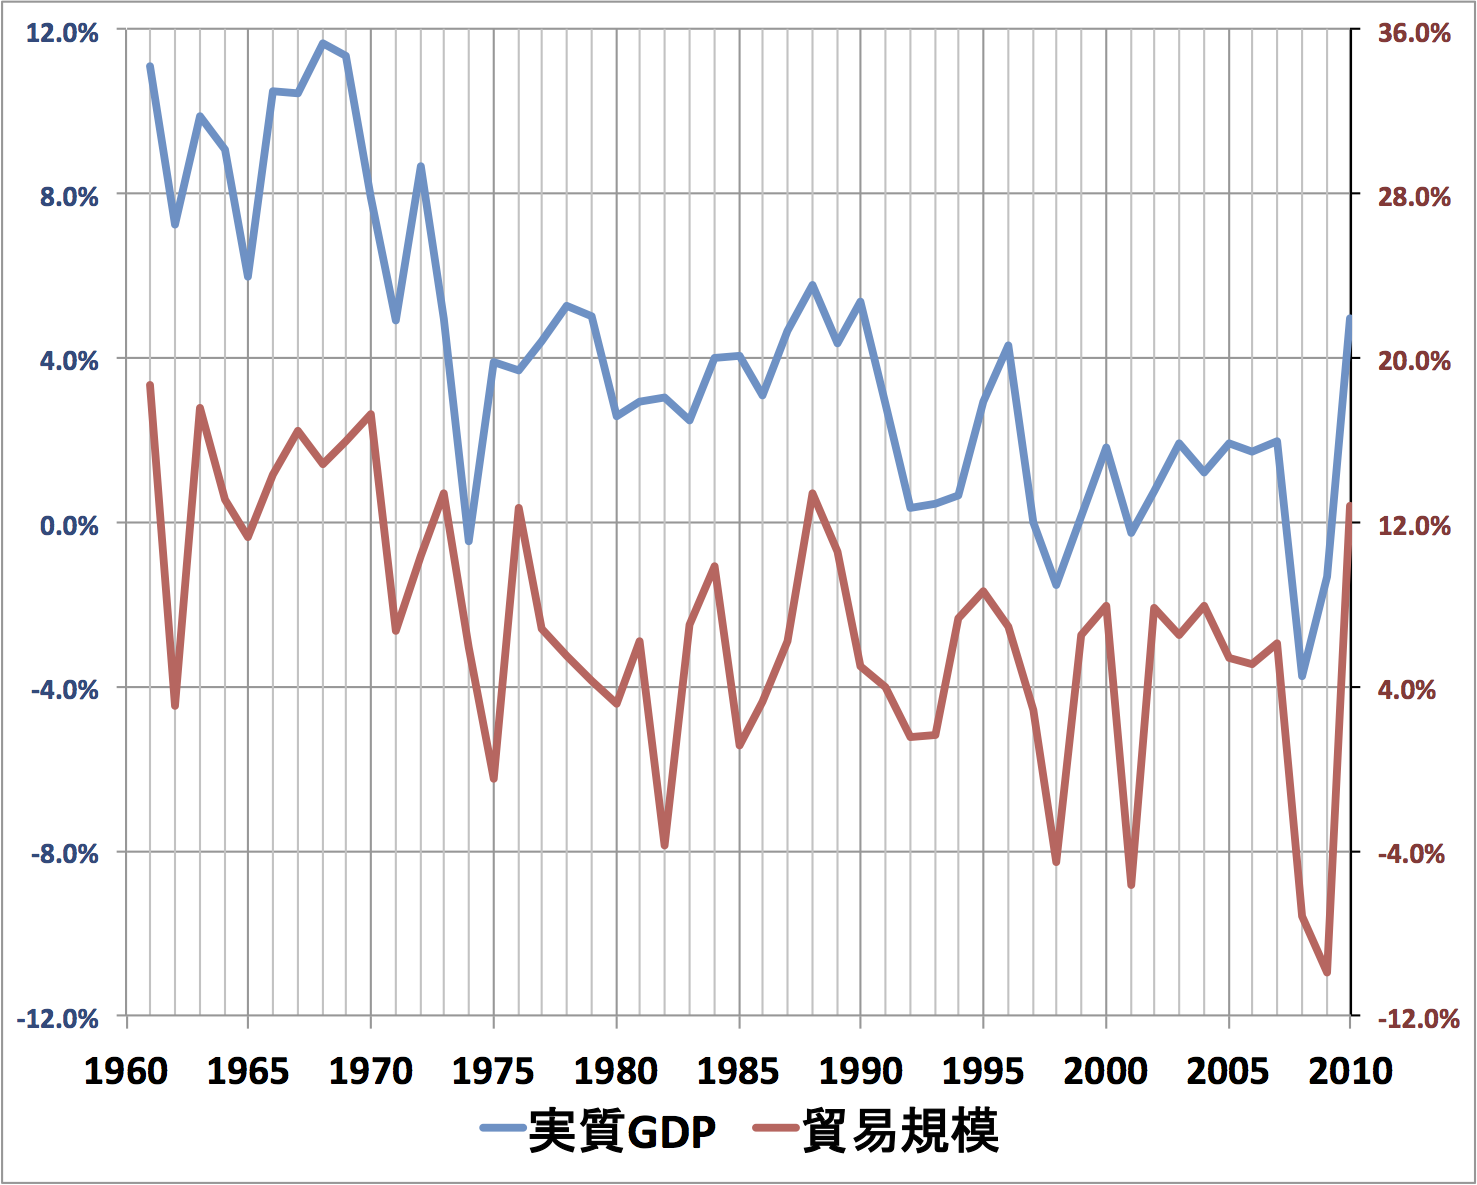 貿易規模と実質GDP：成長率，1961-2010